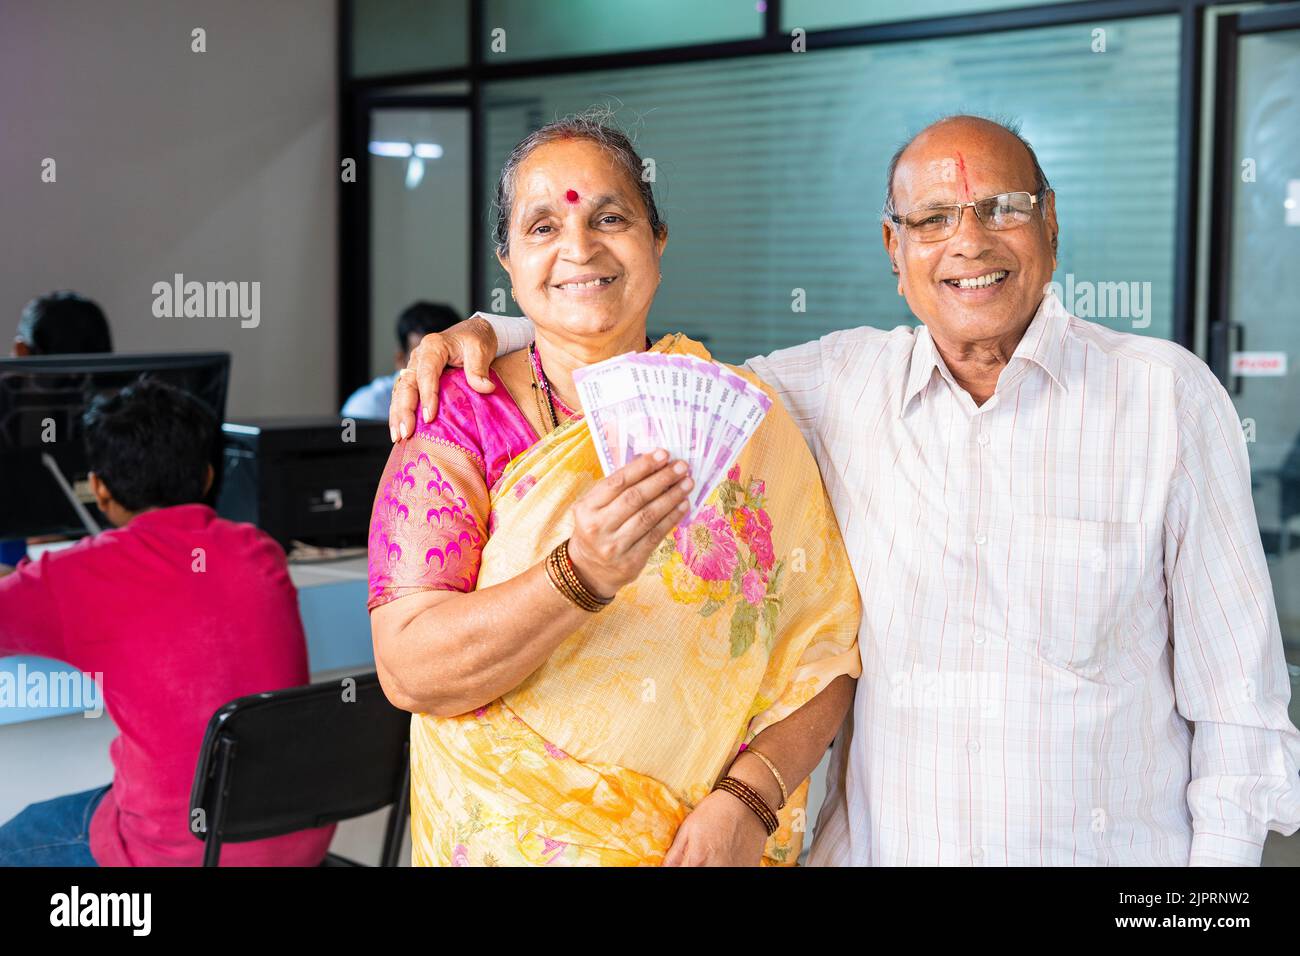 Glückliches lächelndes Senior-Paar zeigt indisches Geld oder Geldscheine, indem sie die Bank mit der Kamera betrachten - Konzept der Kreditgenehmigung, Investitionen, Banken und Stockfoto